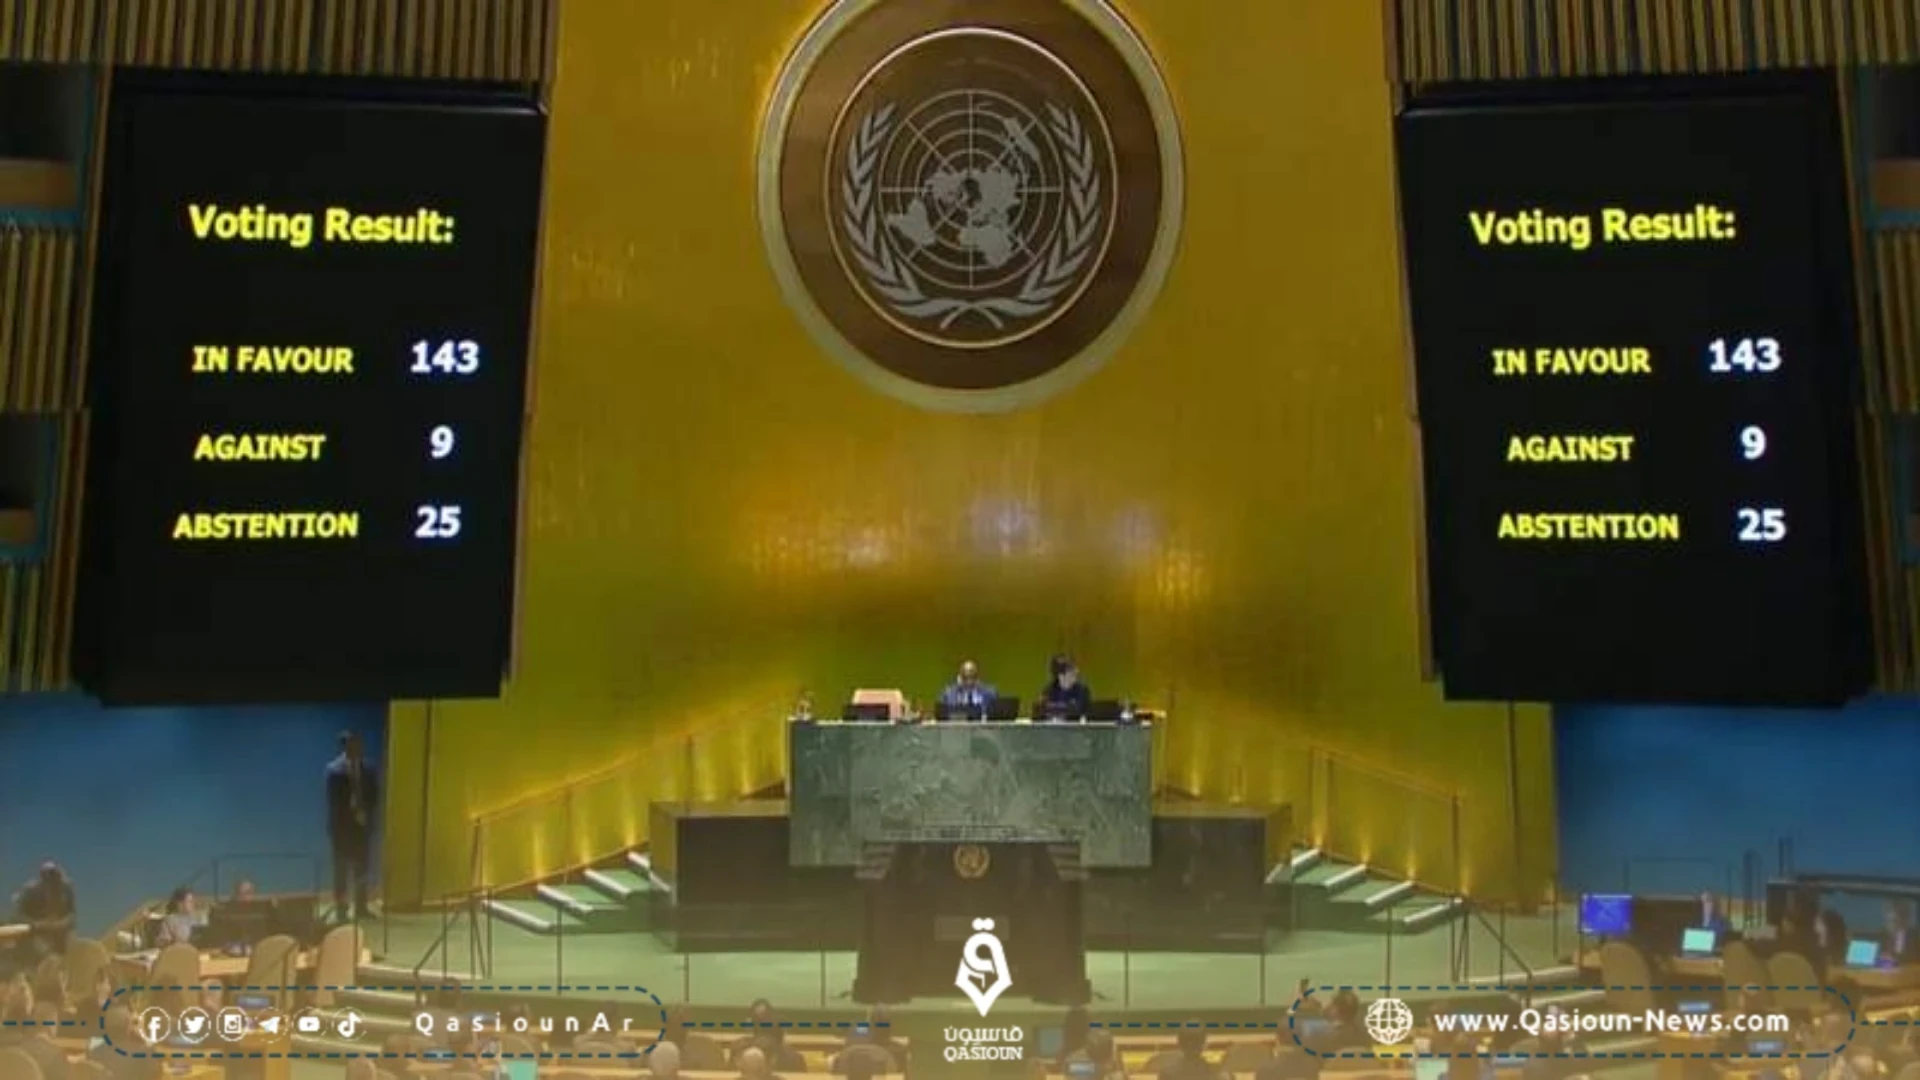 الأمم المتحدة تتبنى قراراً يدعم طلب العضوية الكاملة لفلسطين بأغلبية كبيرة